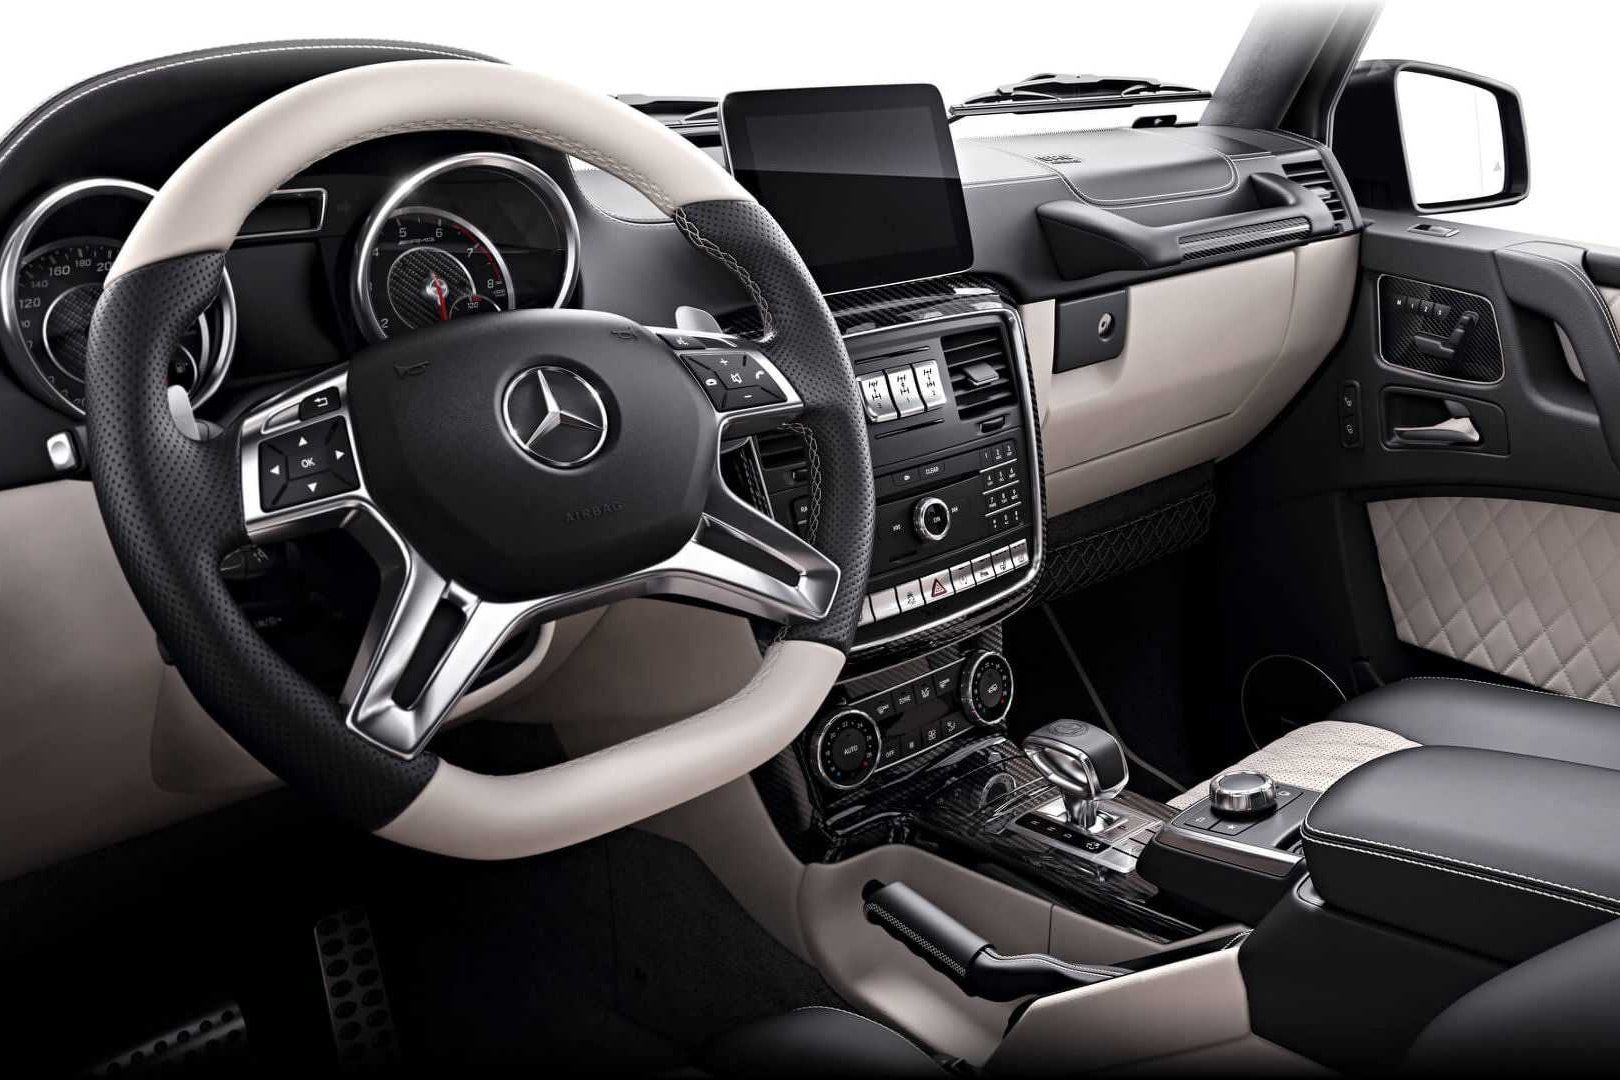 Mercedes-AMG 打造 G63 50 周年限量紀念版車型